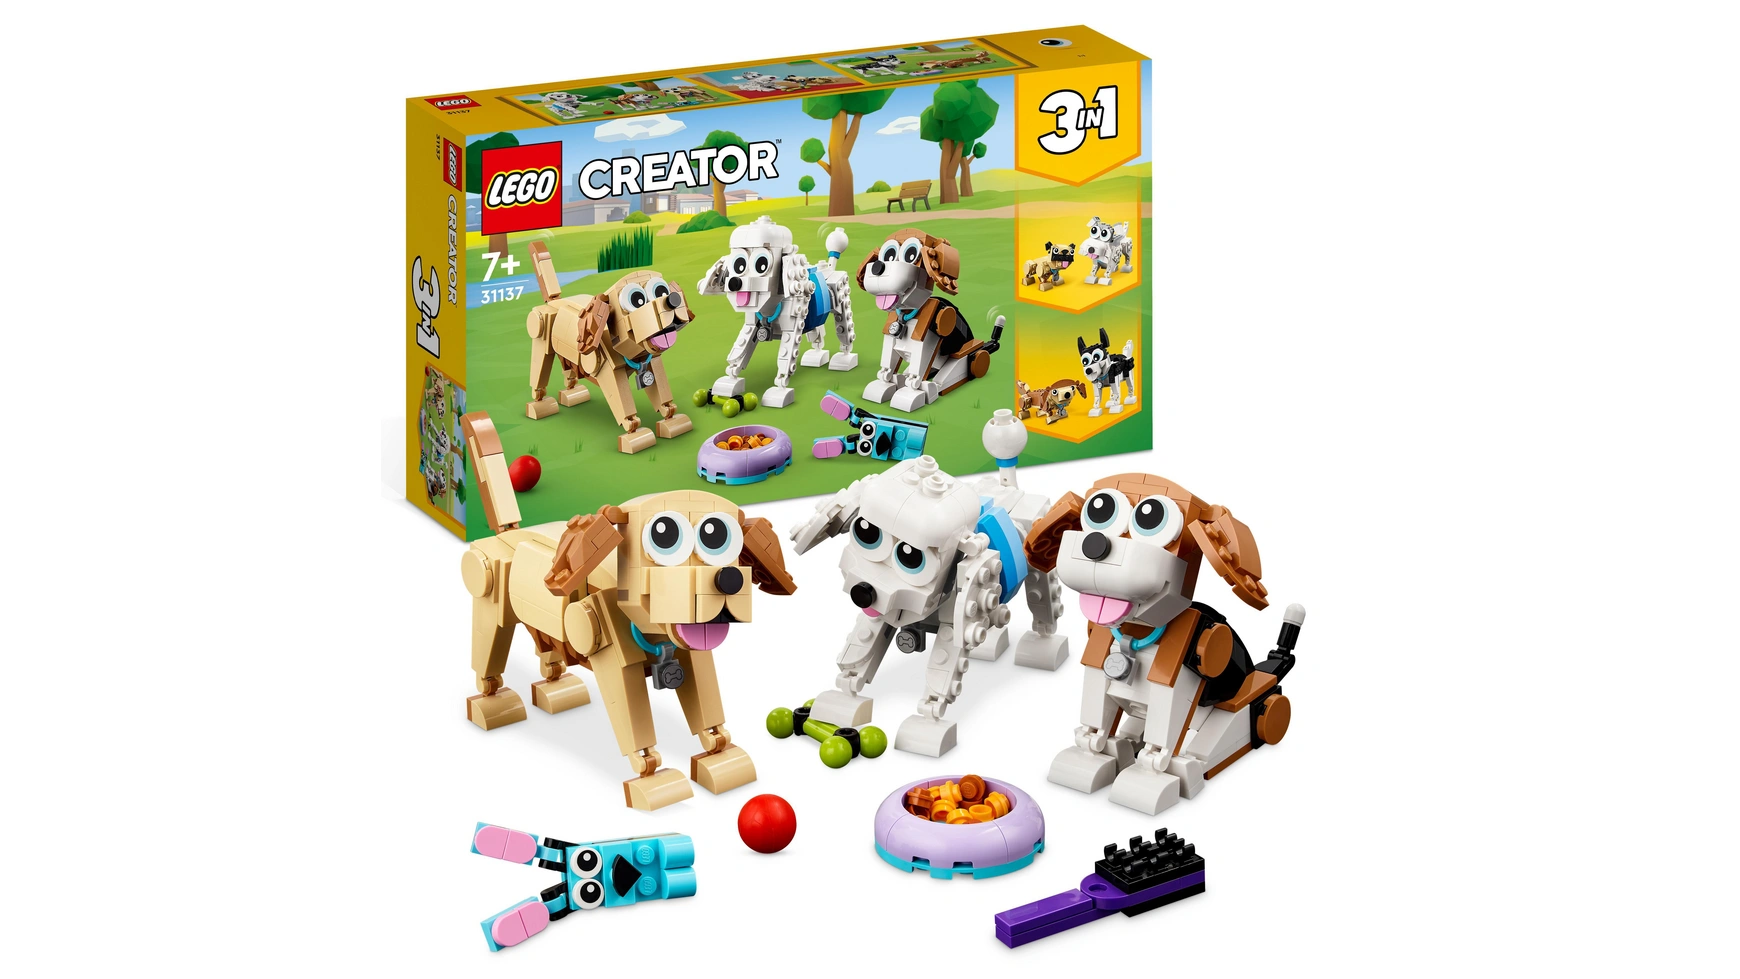 Lego Creator 3in1 Набор игрушек с милыми собаками и животными lego creator 3in1 набор фигурок животного величественный тигр для детей